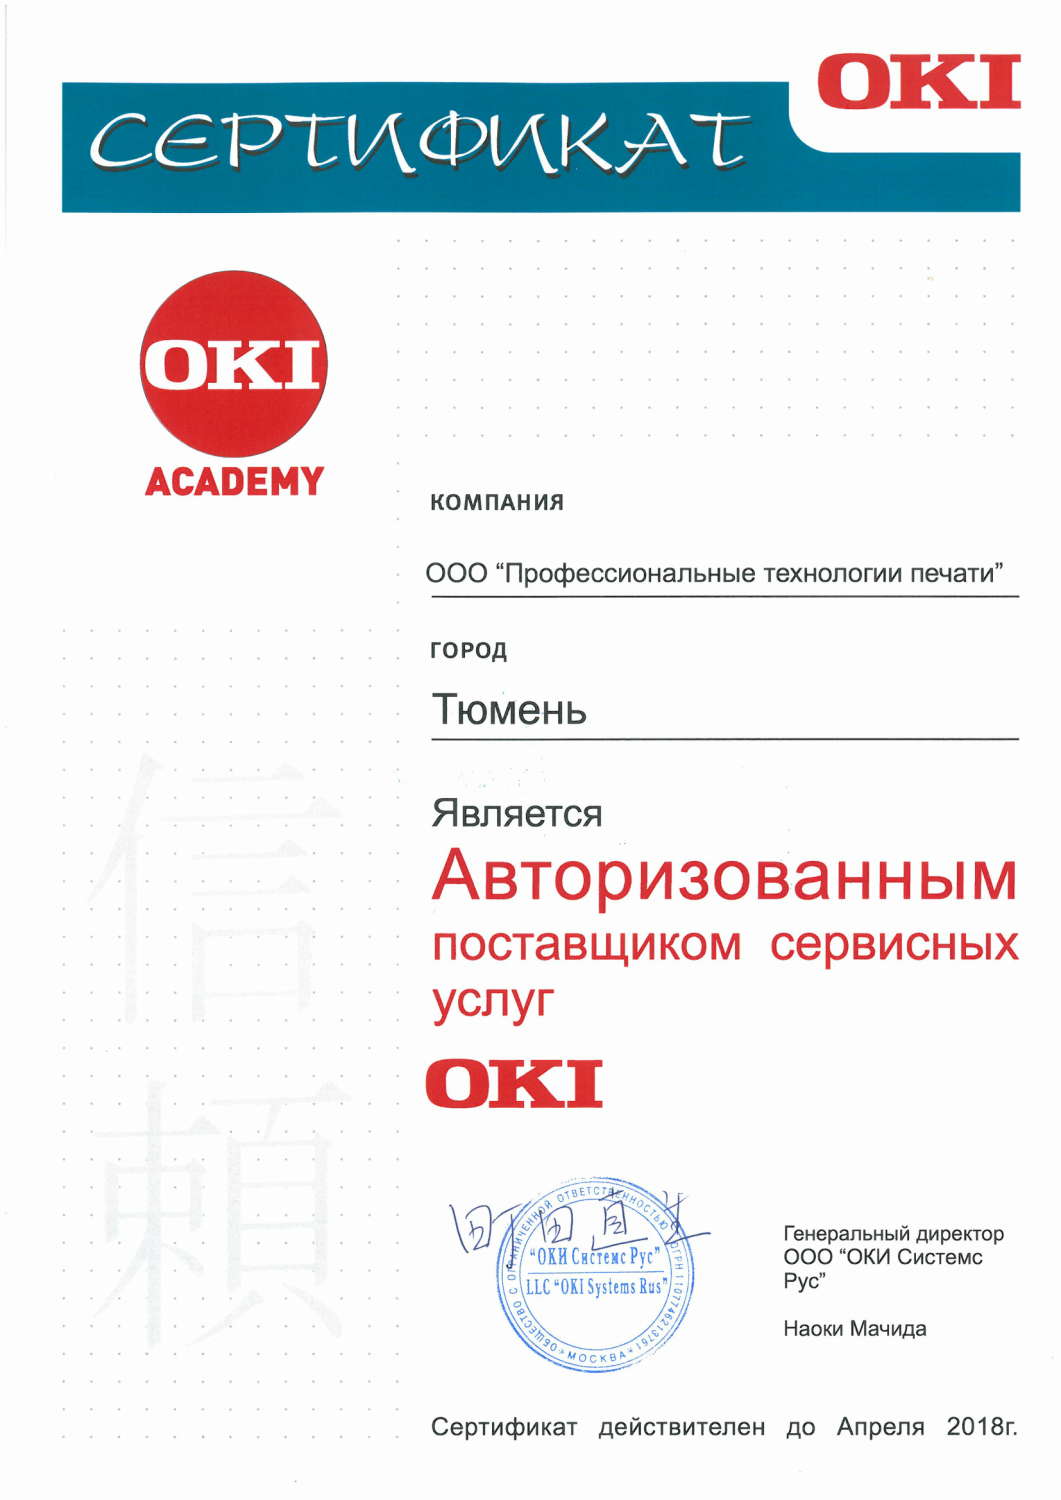 Сертификат OKI Academy. Авторизованный поставщик сервисных услуг